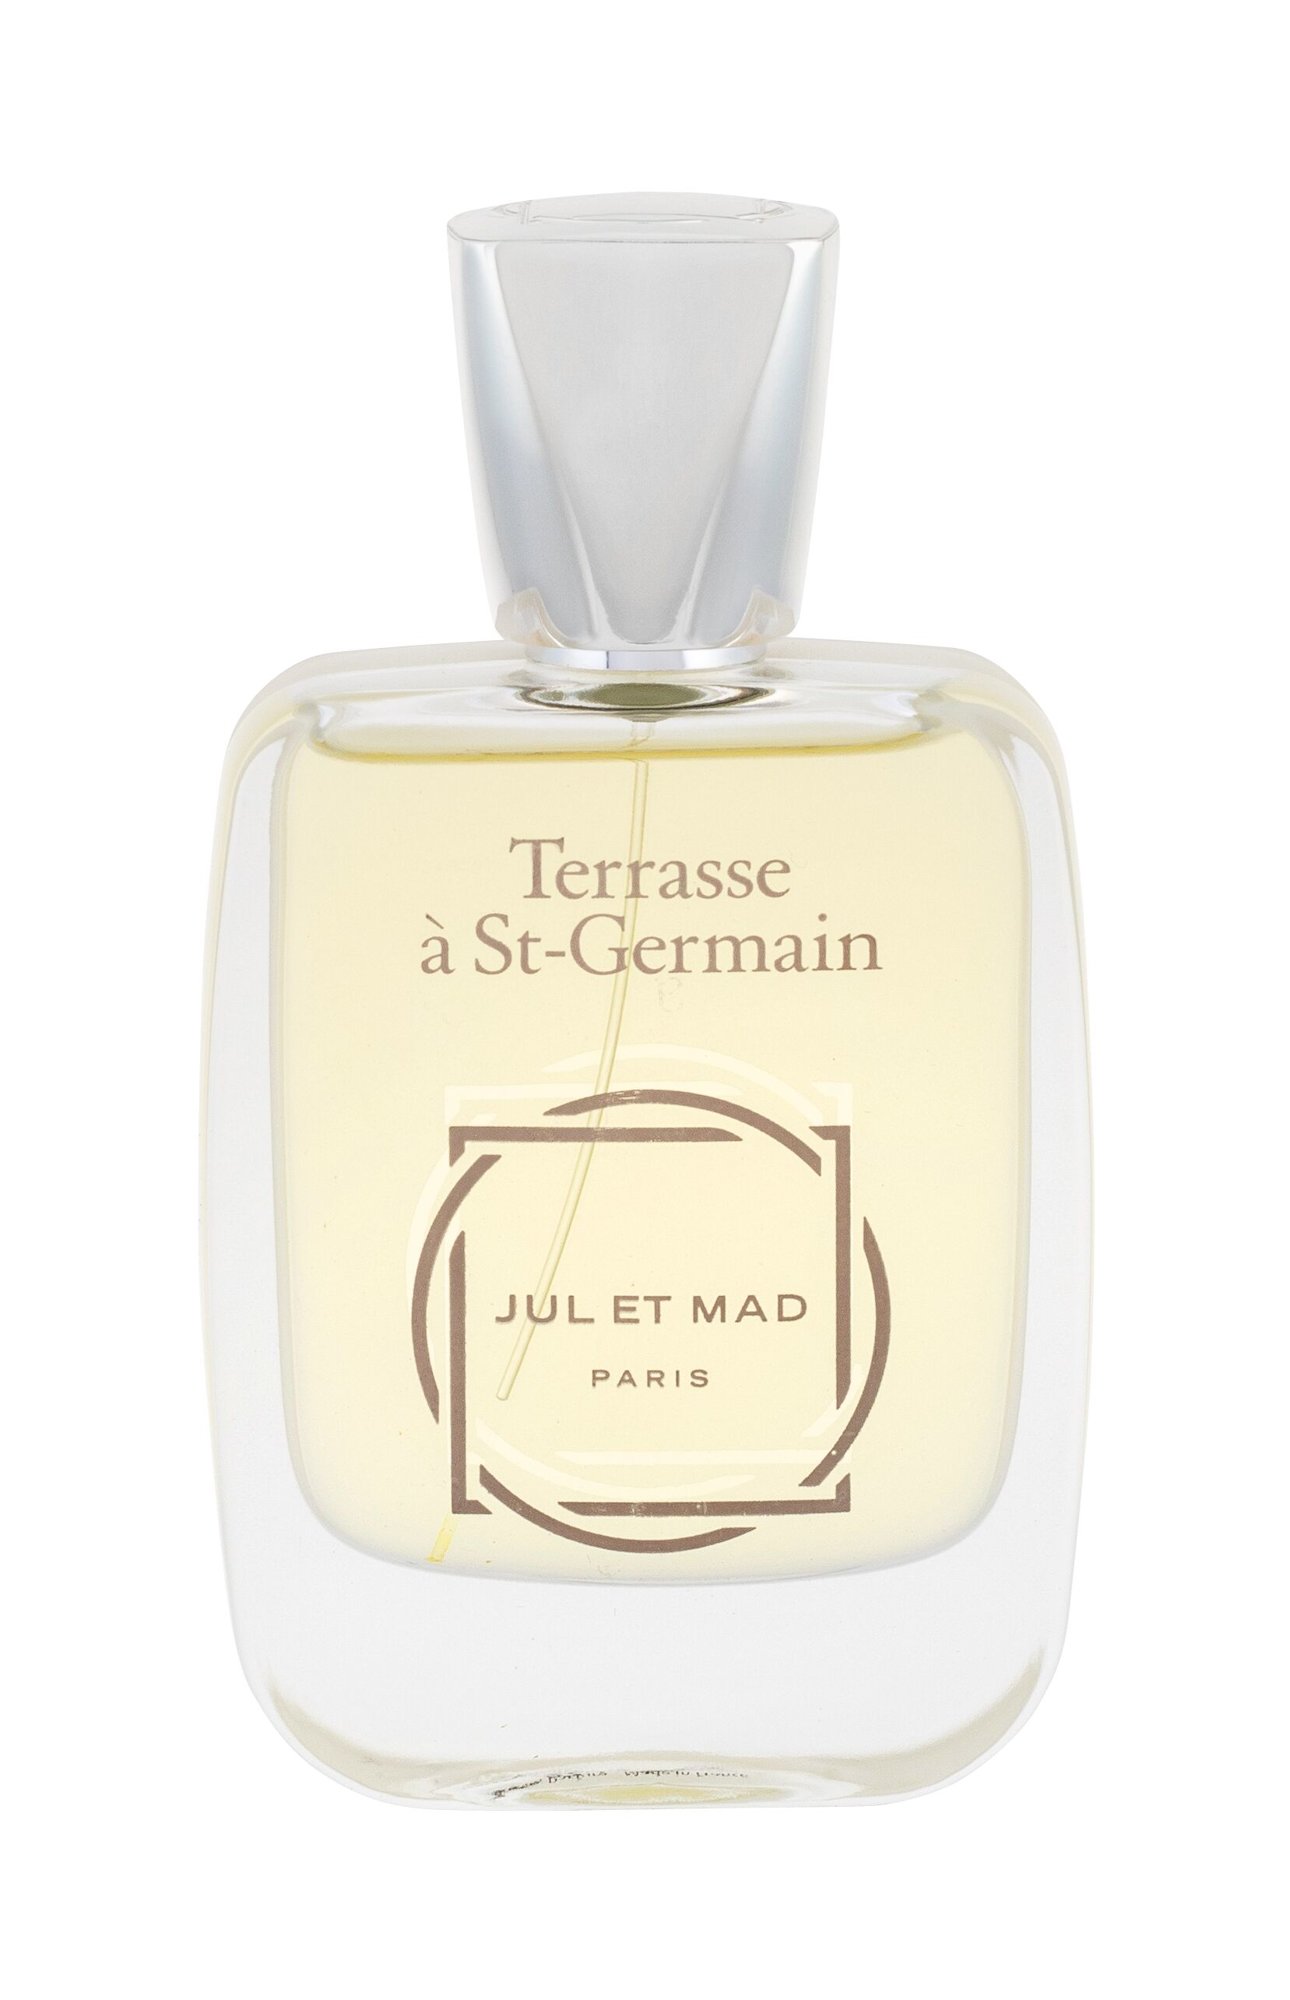 Jul et Mad Paris Terrasse a St-Germain 50ml NIŠINIAI Kvepalai Unisex Parfum (Pažeista pakuotė)